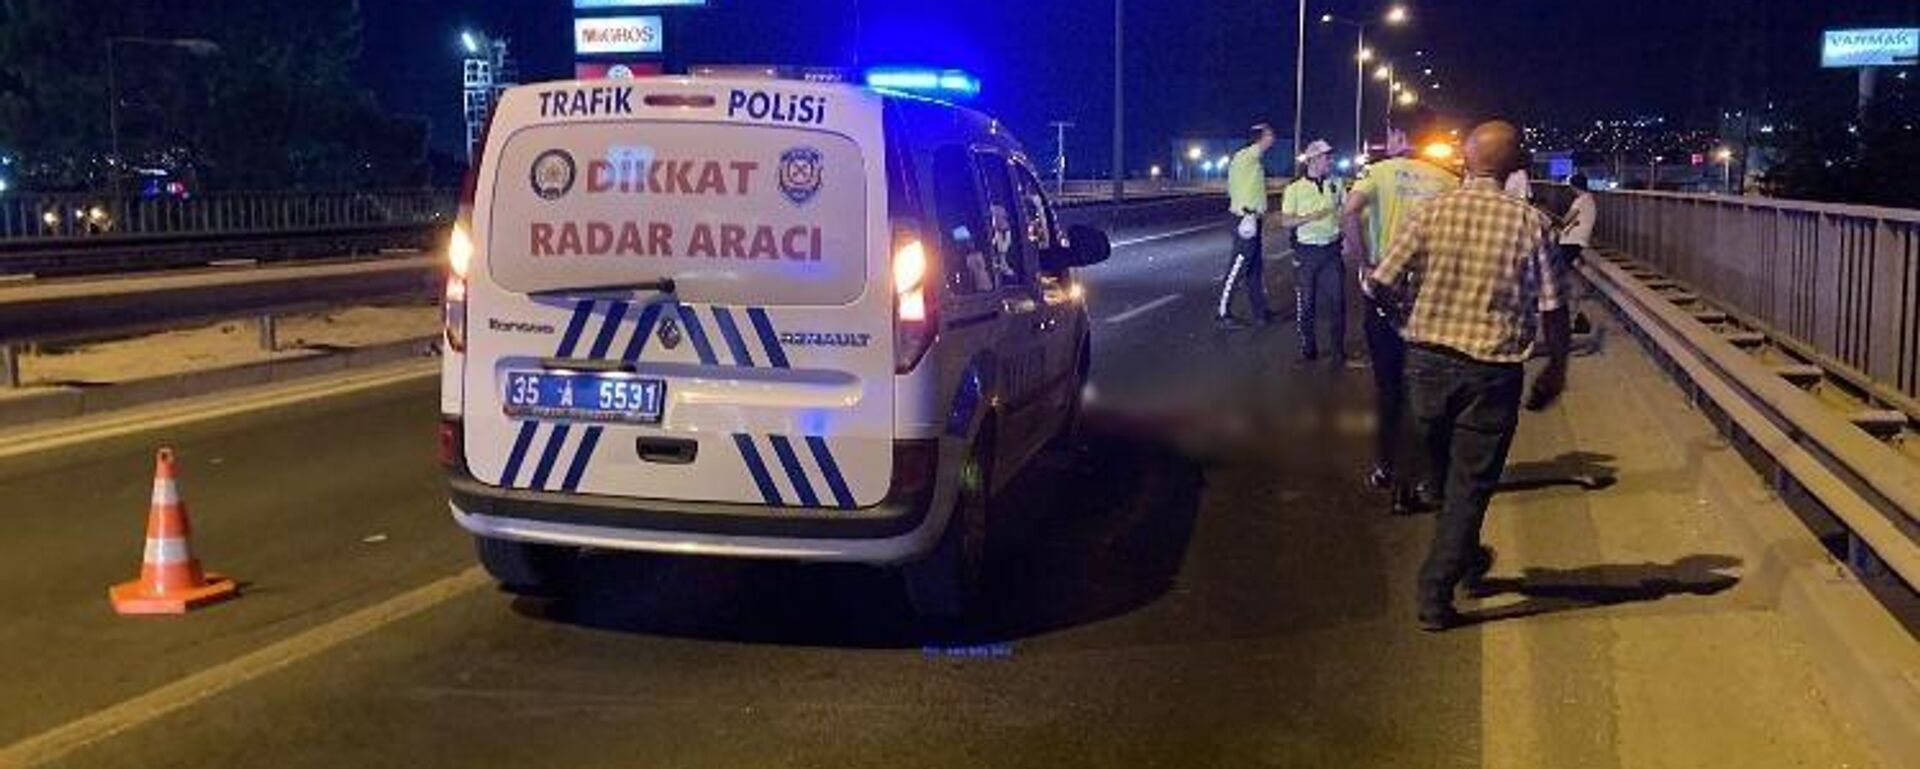 İzmir’in Bornova ilçesinde kamyon ile motosikletin karıştığı kazada 1 kişi hayatını kaybetti. - Sputnik Türkiye, 1920, 08.07.2022